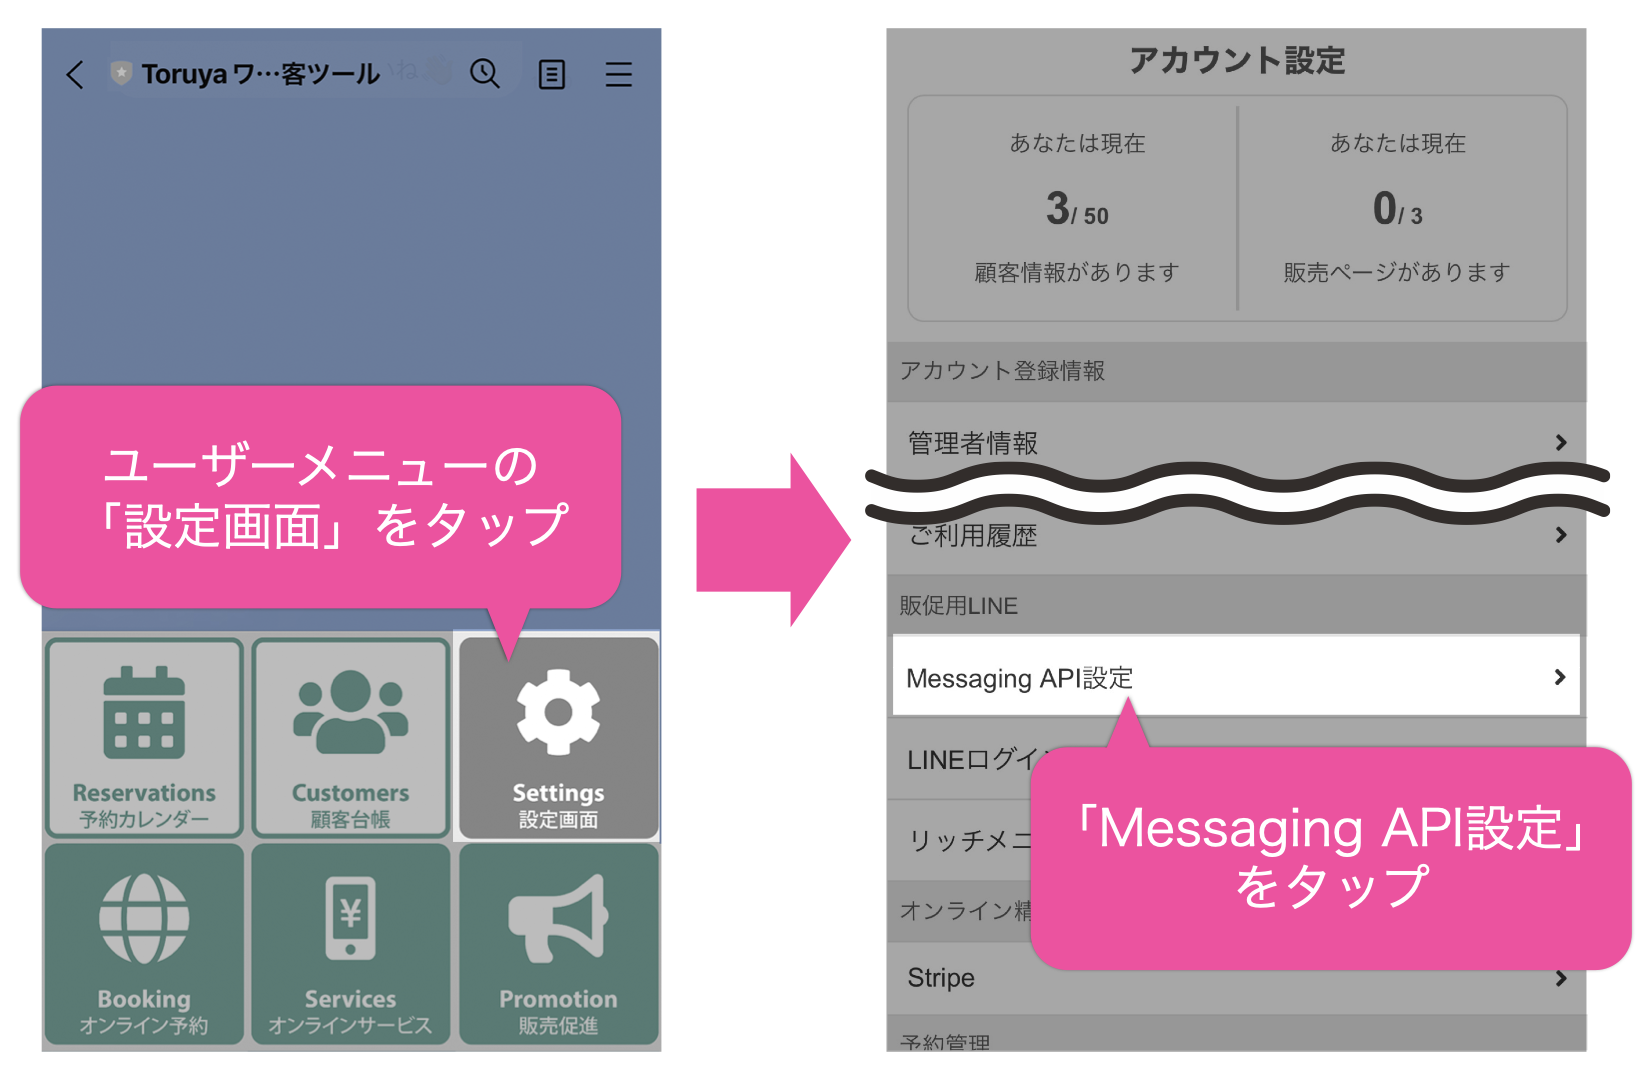 ユーザーメニューの「設定画面」をタップして「Messaging API設定」メニューをタップ